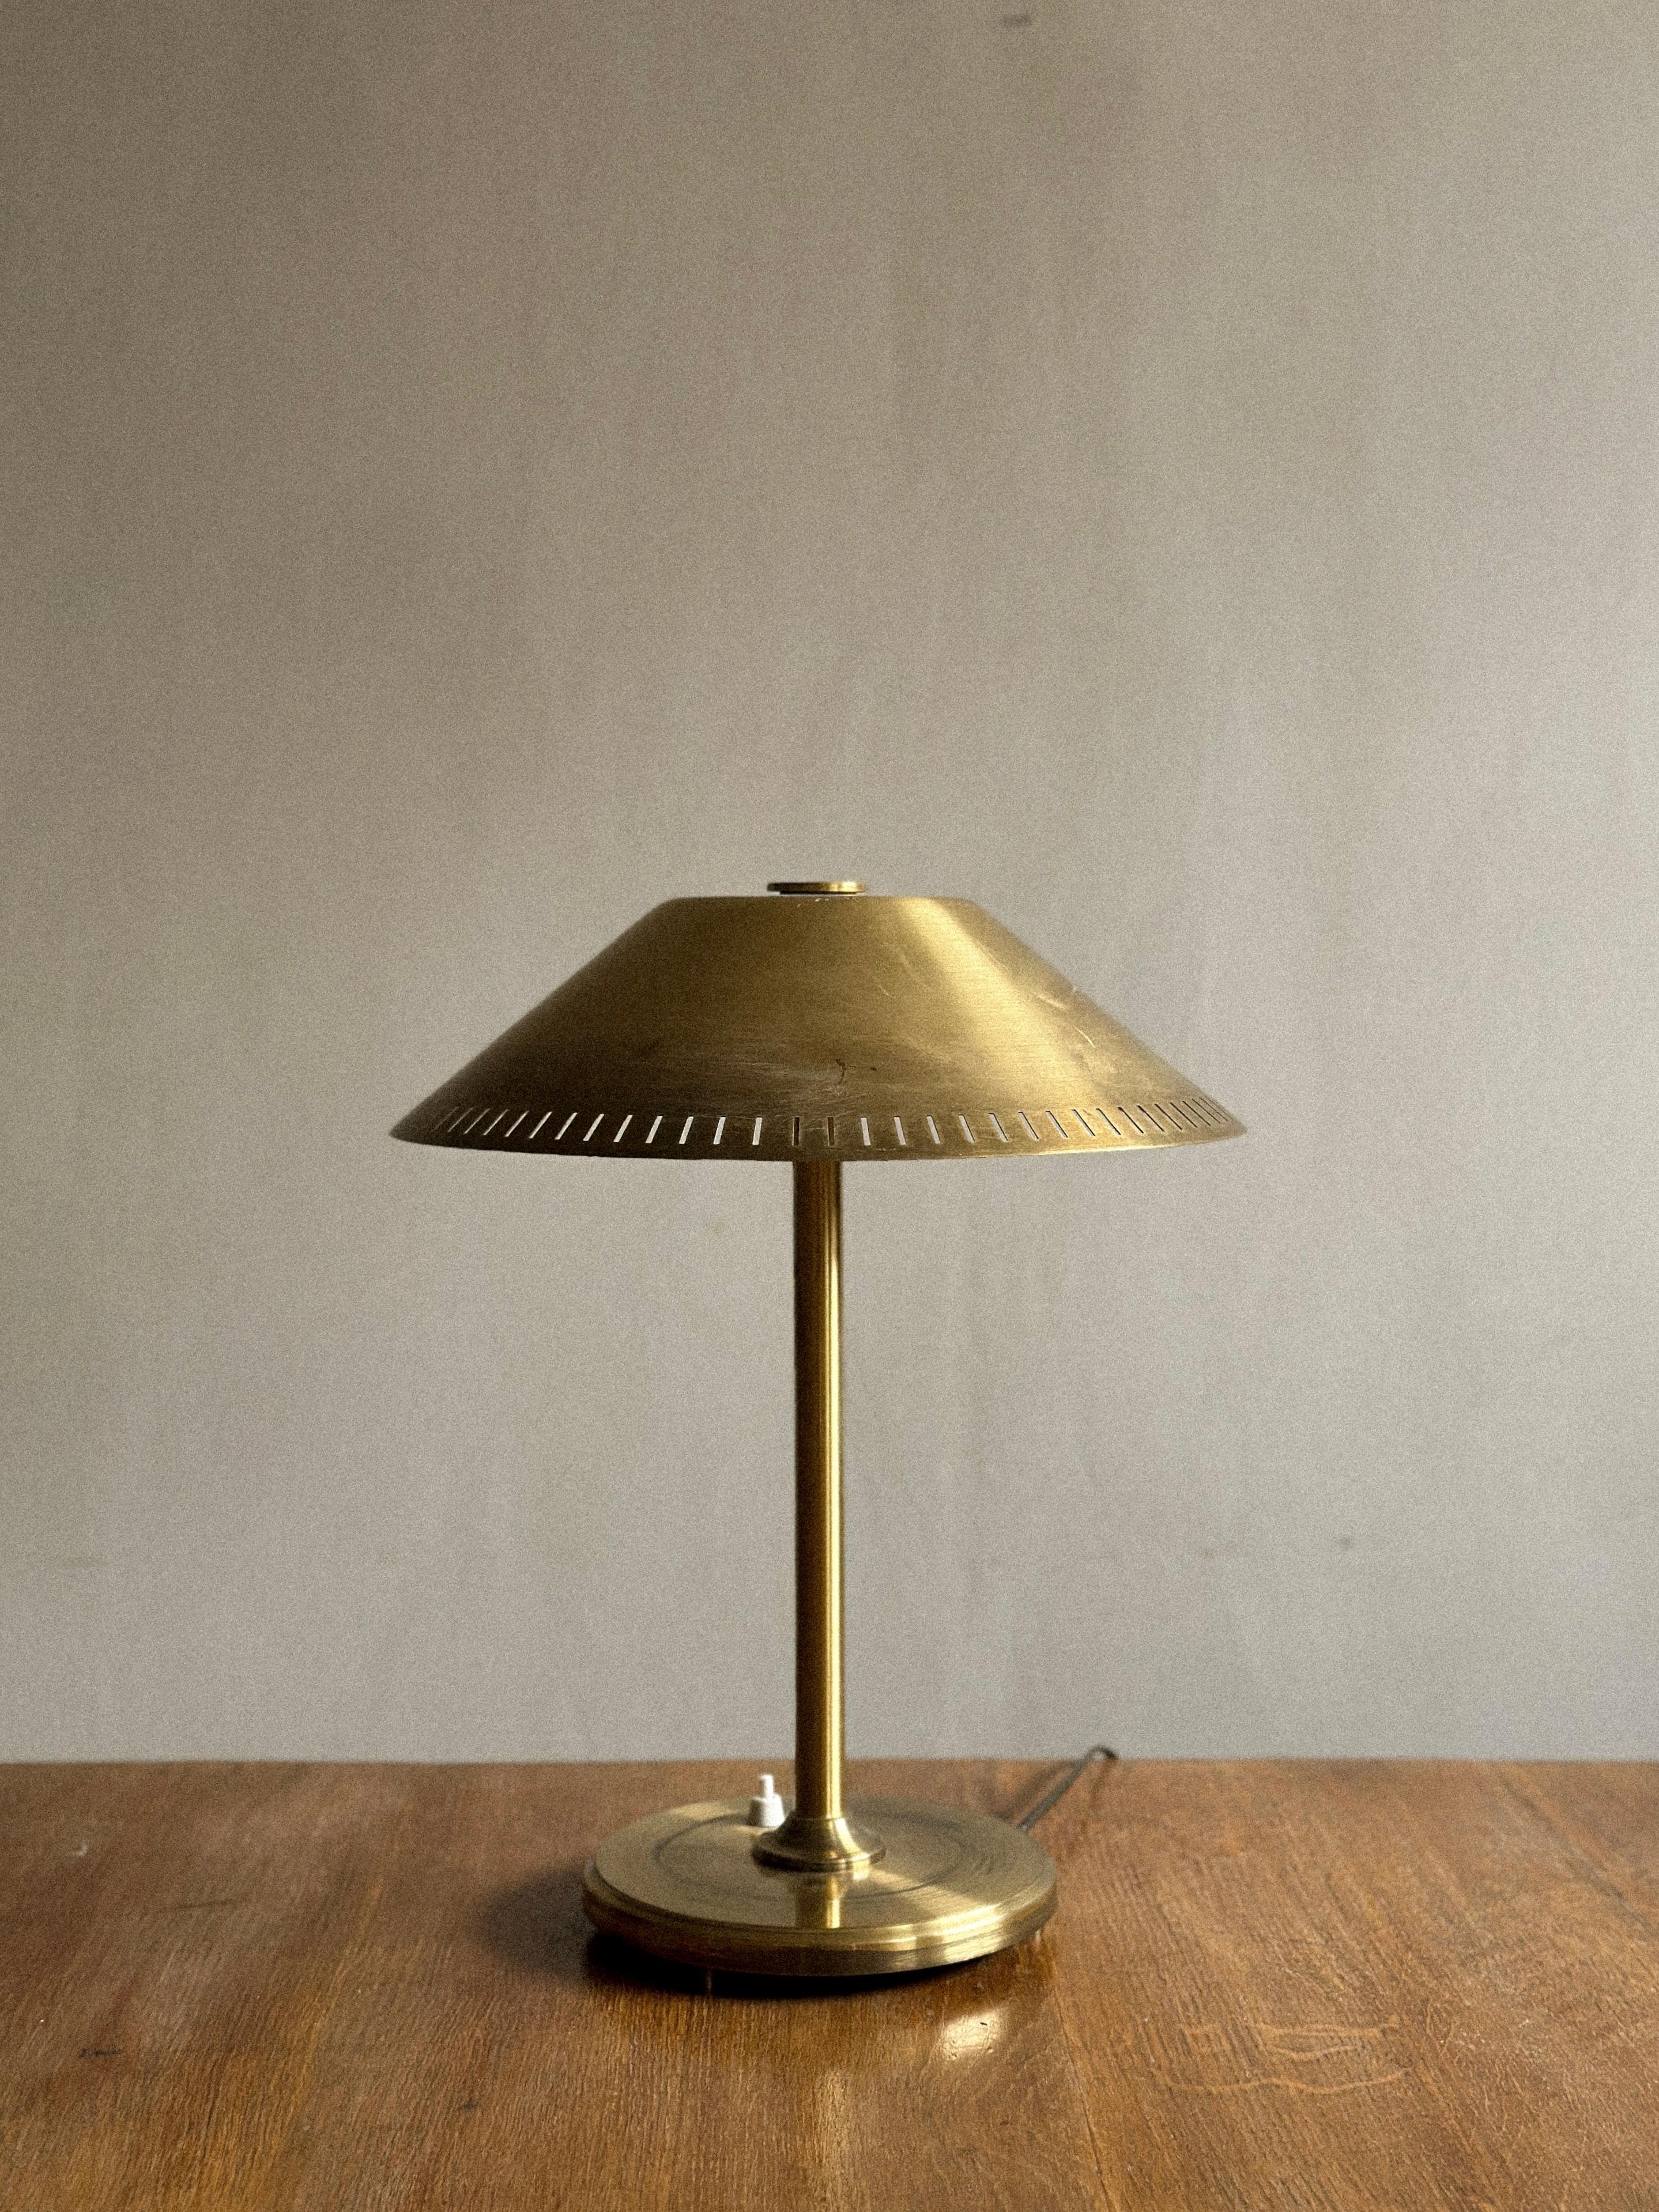 Skandinavische Mid-Century-Tischlampe aus Messing, 1950er Jahre (Moderne der Mitte des Jahrhunderts)